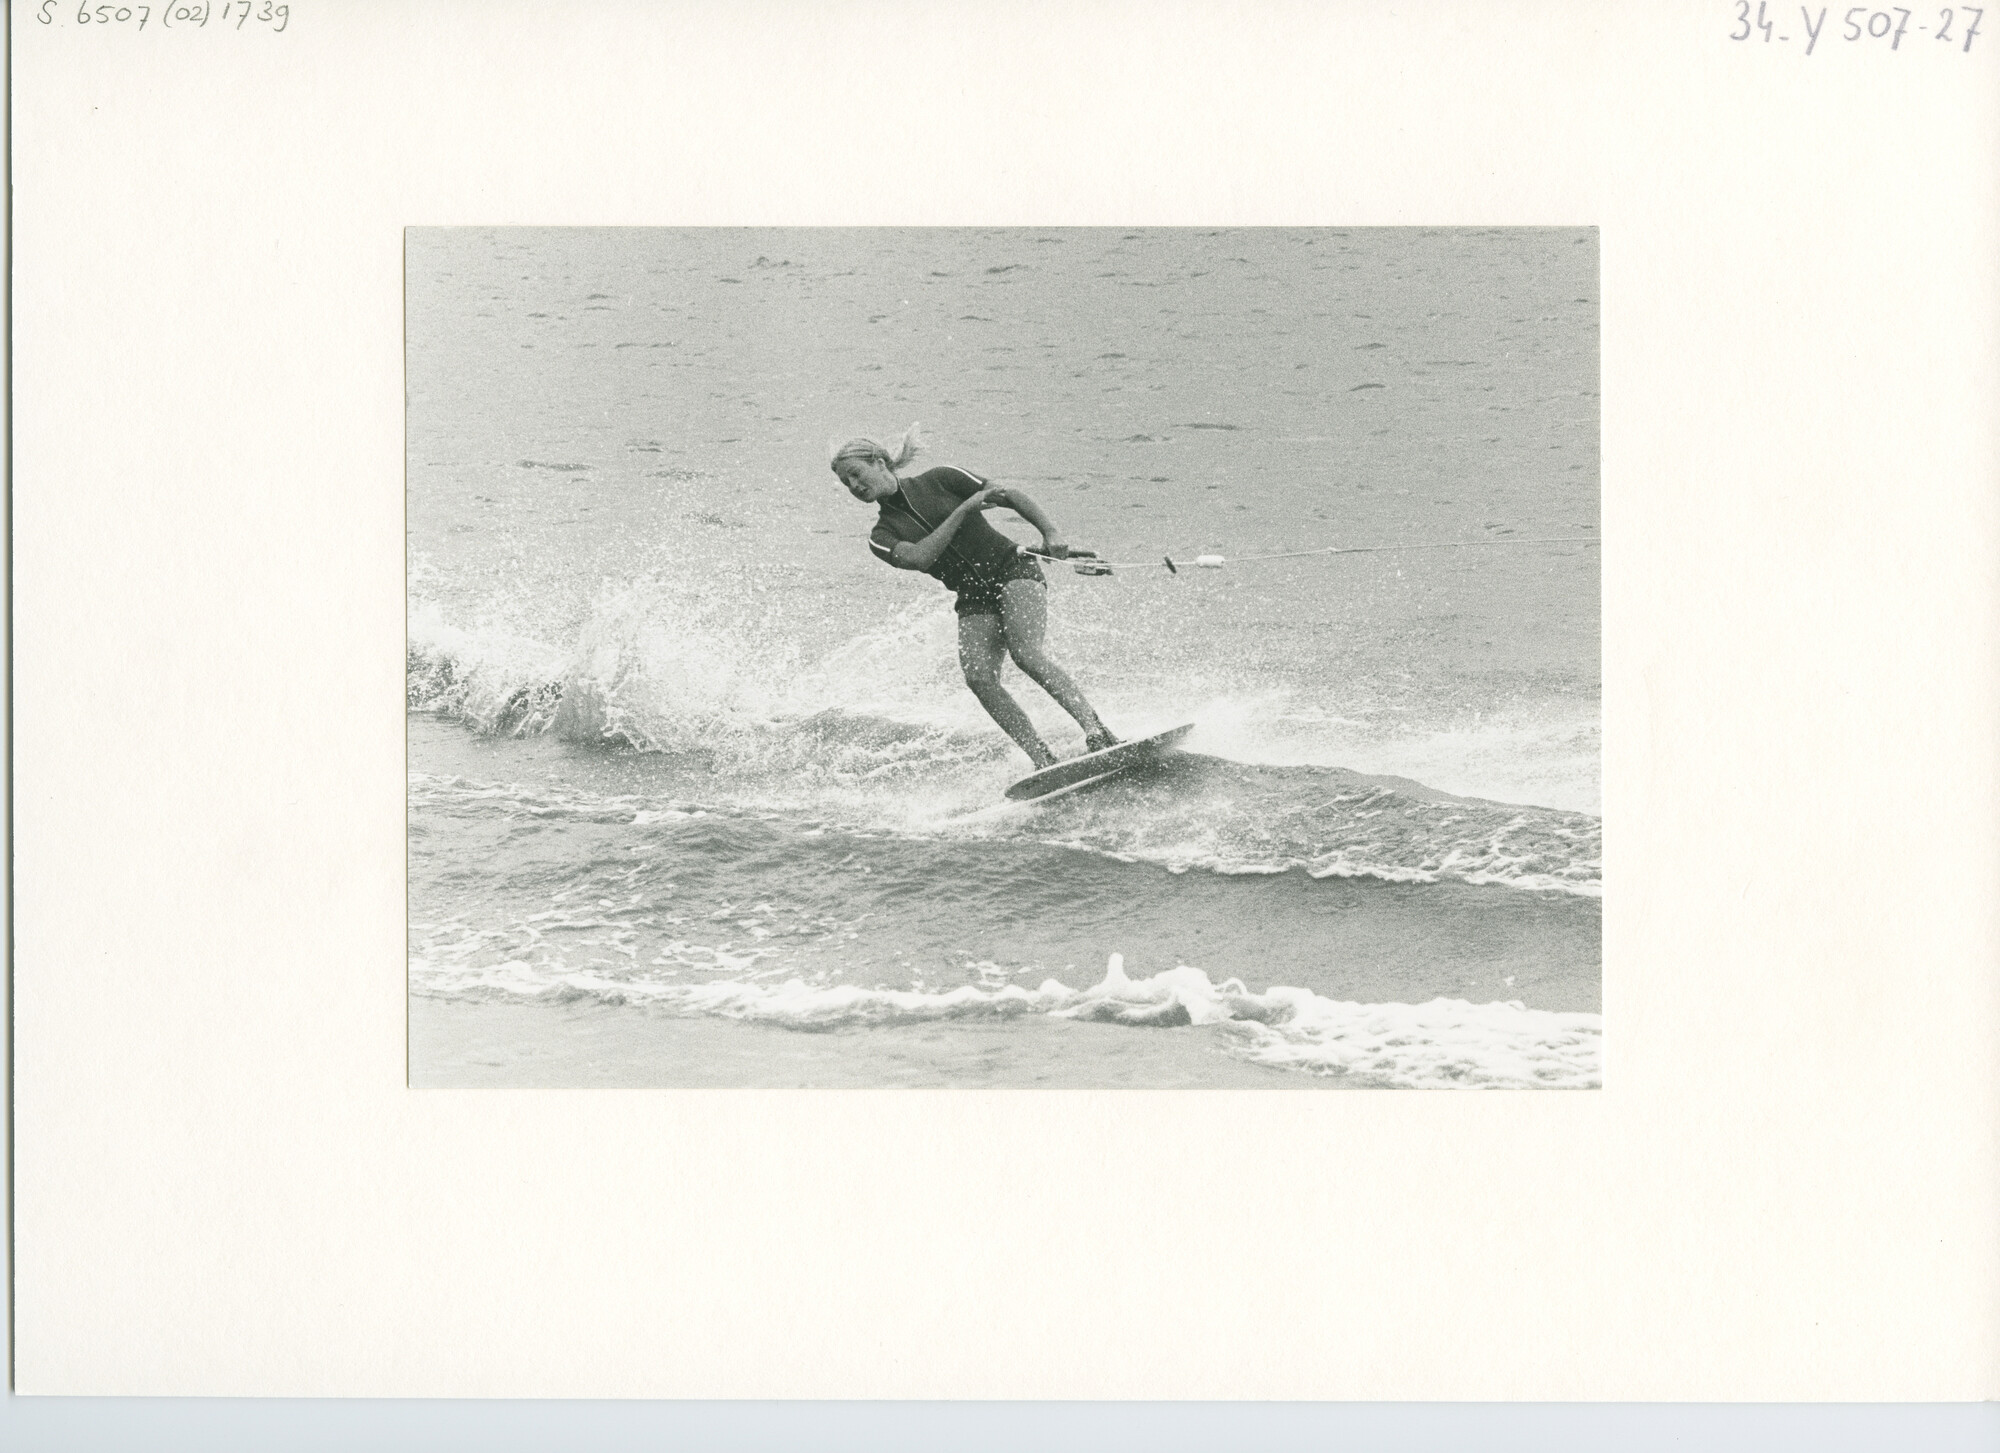 S.6507(02)1739.03; Zwart-wit foto van de Noord-Europese kampioenschappen waterskiën 1970 op de Gouwzee; foto